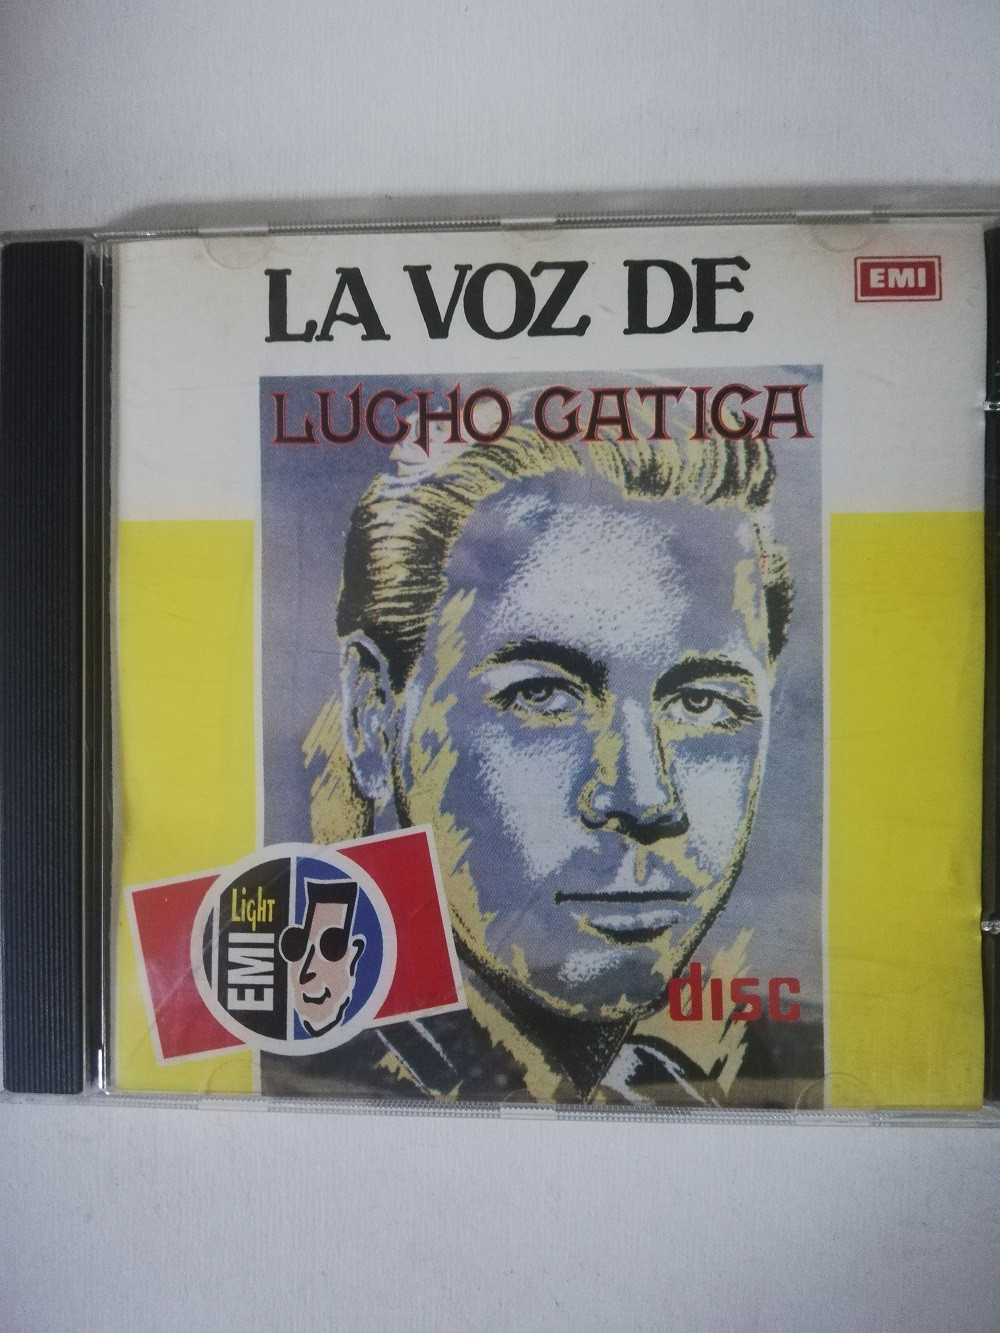 Imagen CD LUCHO GATICA - LA VOZ DE LUCHO GATICA 1